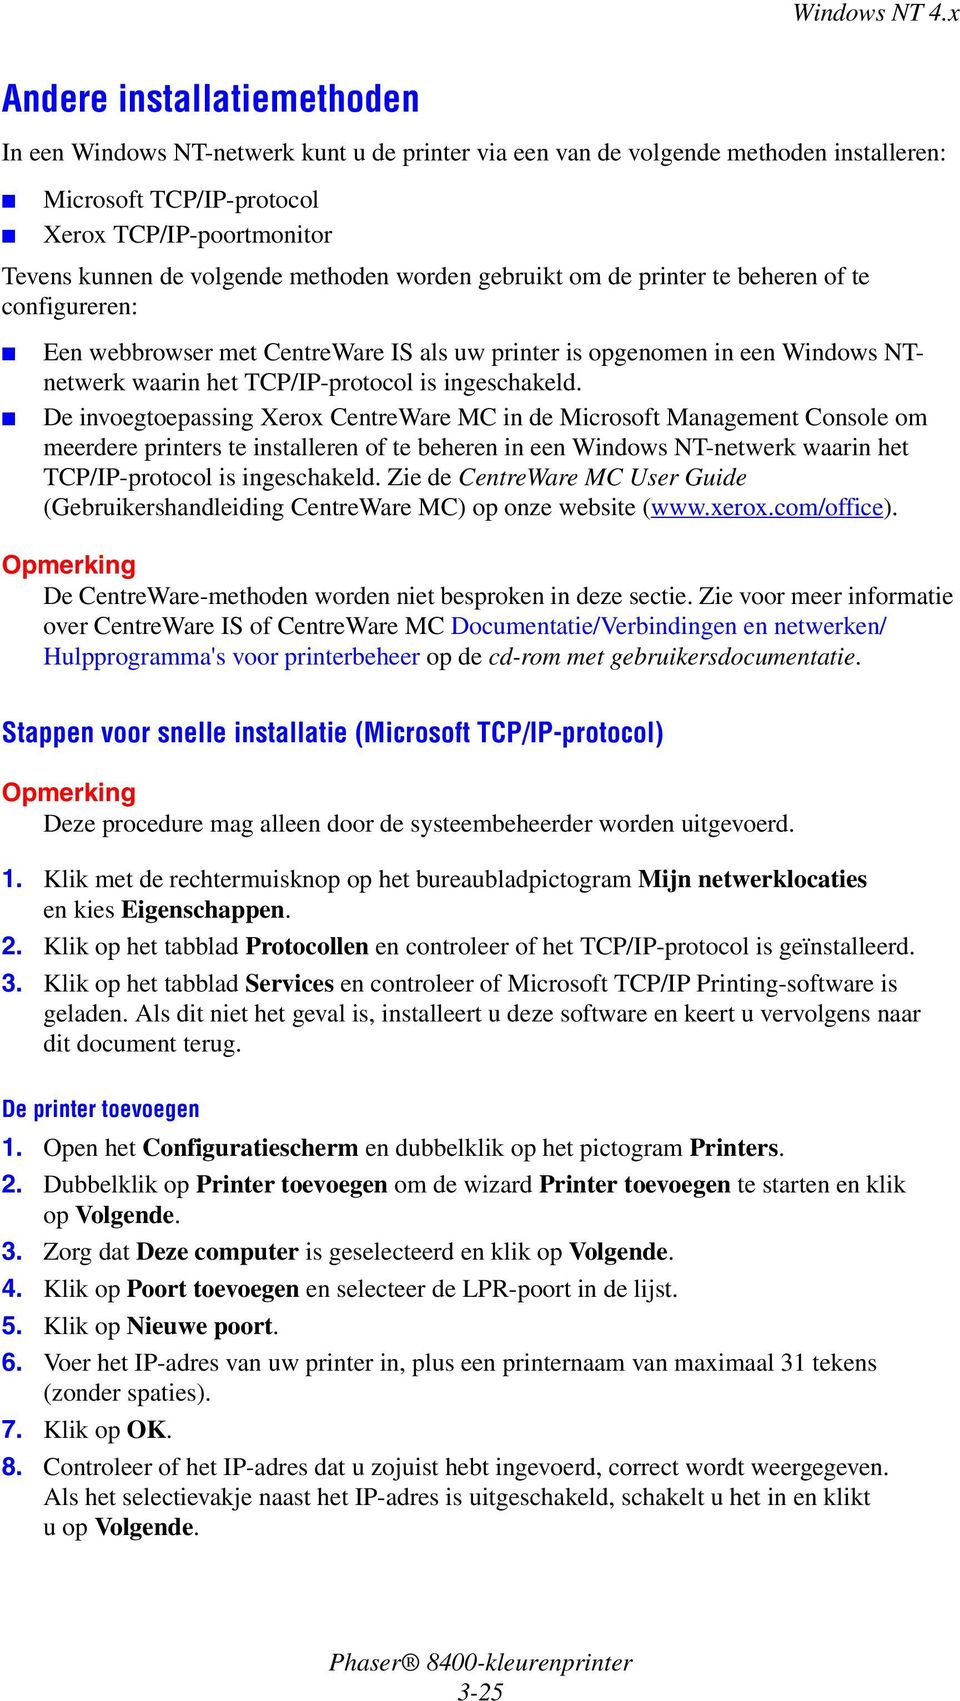 De invoegtoepassing Xerox CentreWare MC in de Microsoft Management Console om meerdere printers te installeren of te beheren in een Windows NT-netwerk waarin het TCP/IP-protocol is ingeschakeld.